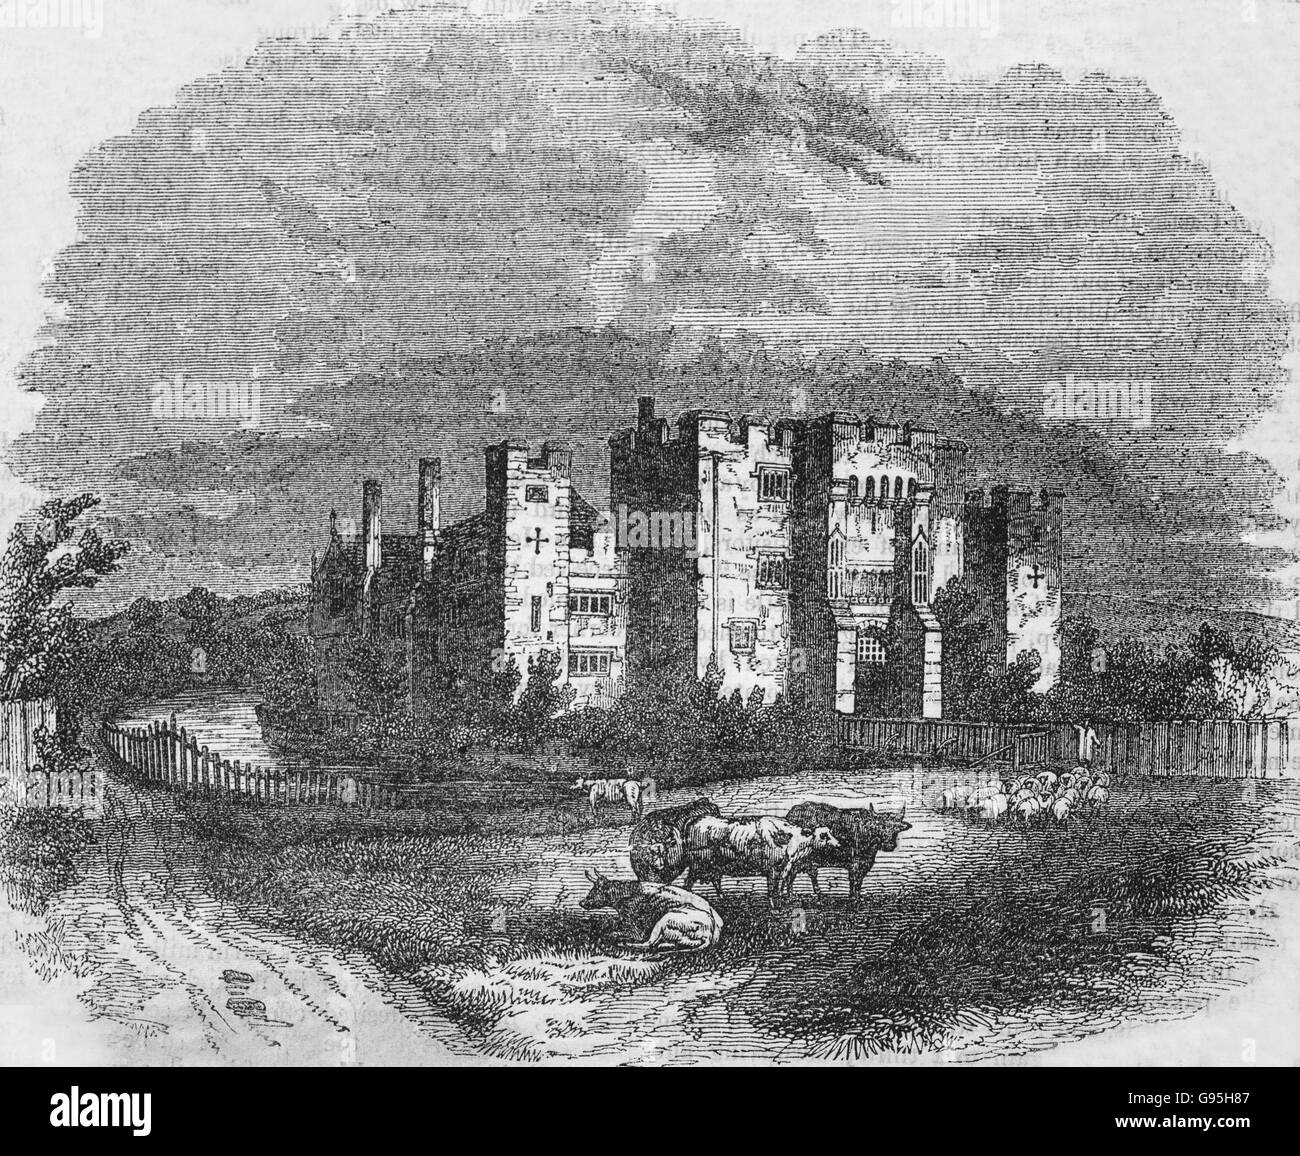 Il castello di Hever, Kent, Inghilterra, da un XIX secolo incisione. Il castello di Hever Castle è situato nel villaggio di Hever, Kent, vicino a Edenbridge, 30 miglia (48 km) a sud-est di Londra, Inghilterra. Ha cominciato come un country house, costruita nel XIII secolo. Dal 1462 al 1539 fu la sede dei Boleyn, originariamente "Bullen', famiglia. Foto Stock